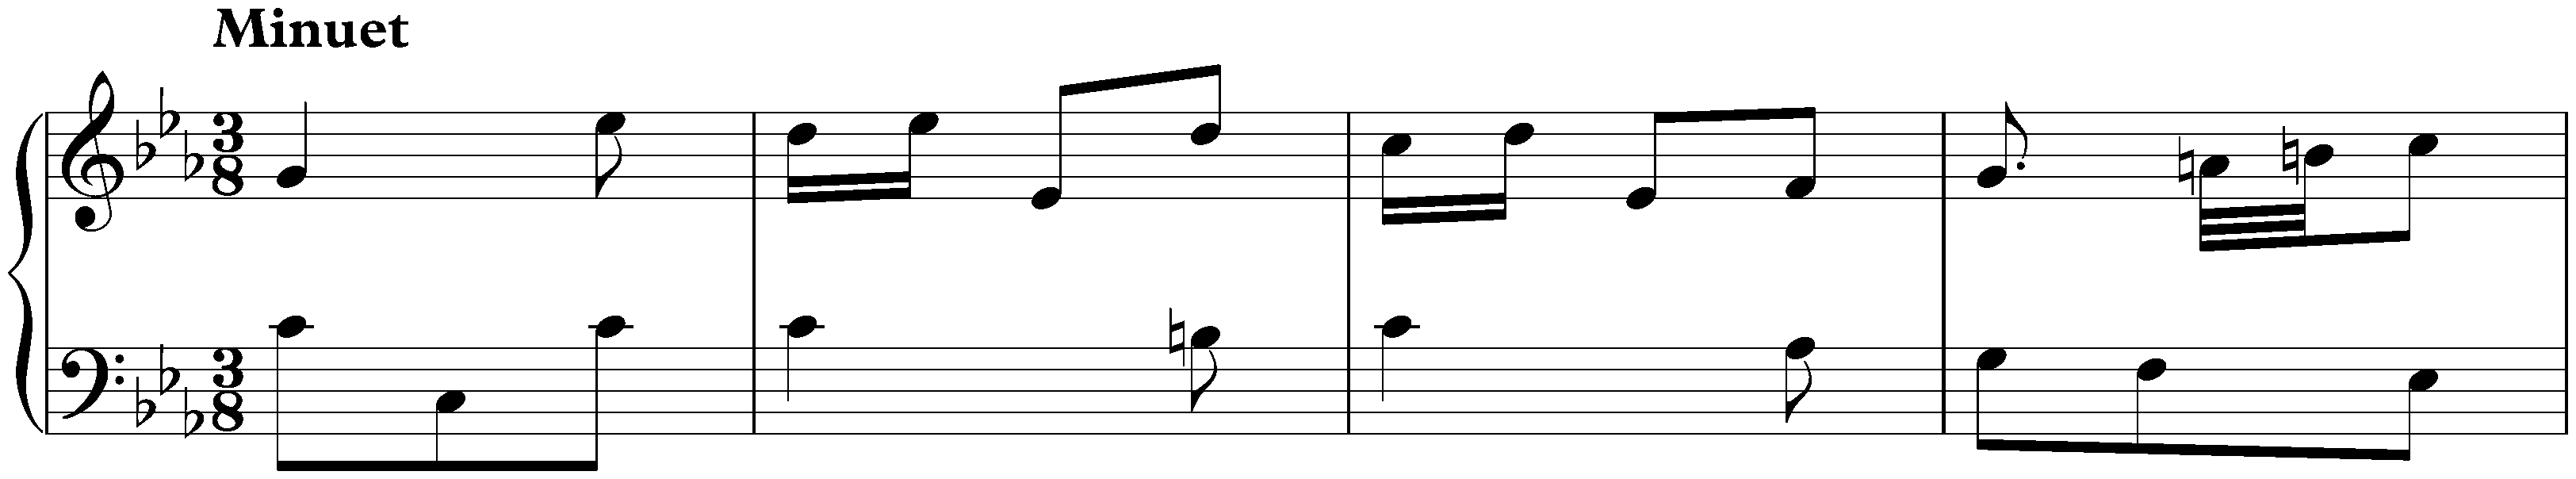 Sonatas found in Paris; 2. C minor, 2. Minuet